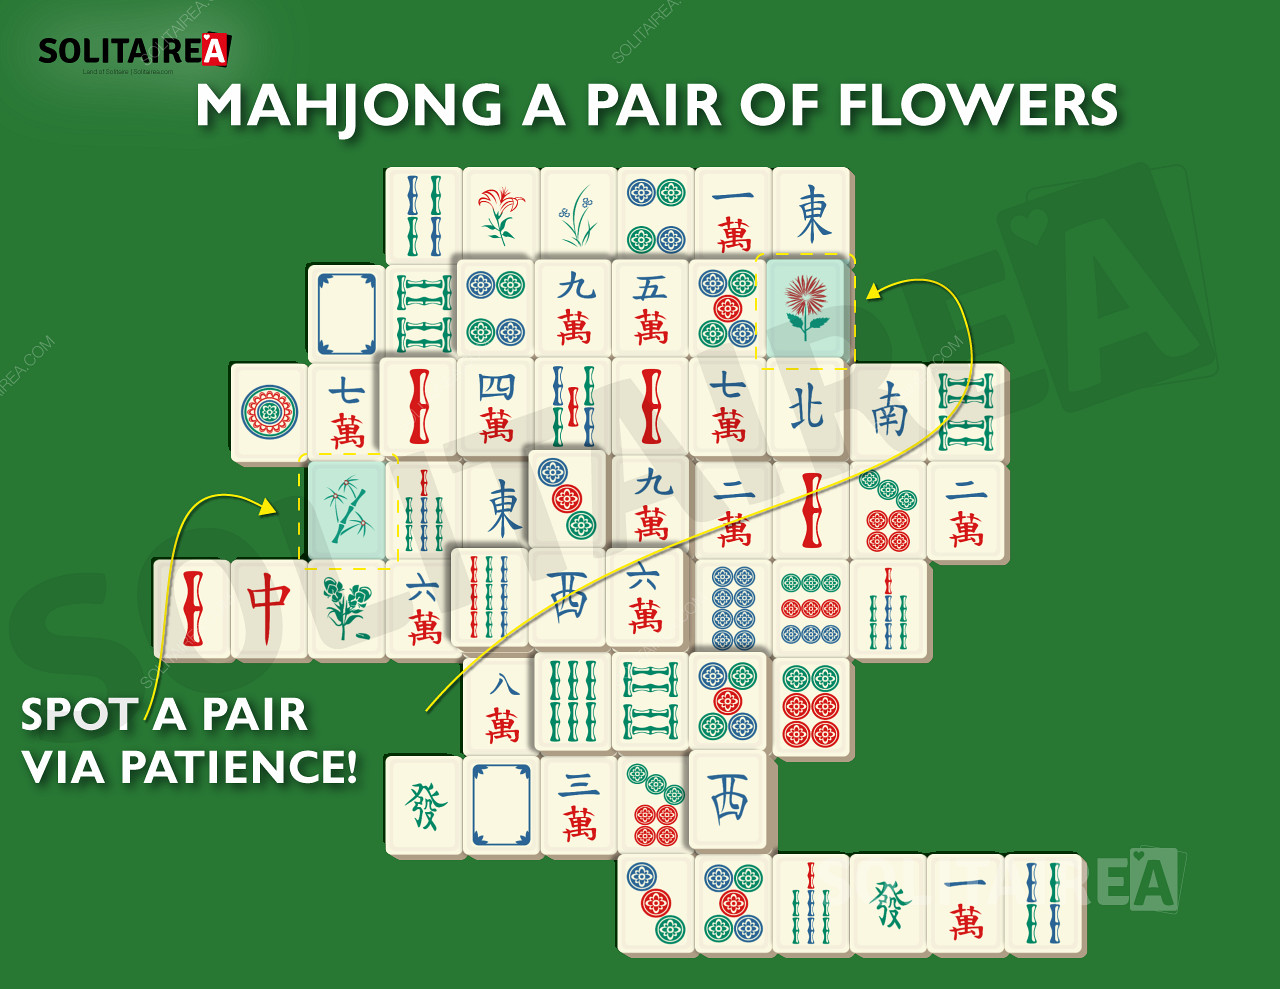 Image du Mahjong Solitaire montrant une sélection typique de tuiles.